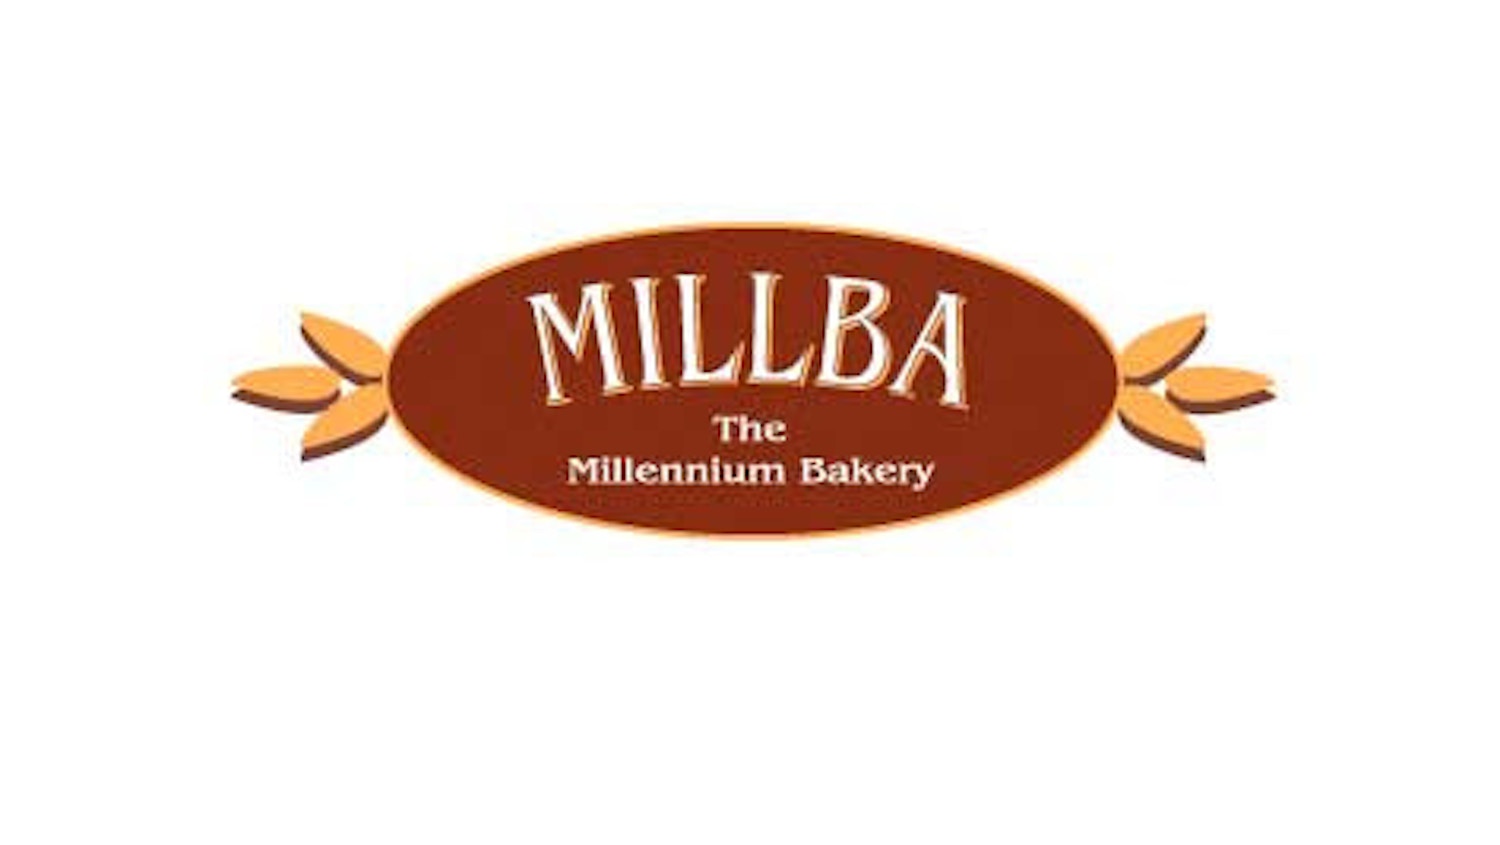 Millba liten logo